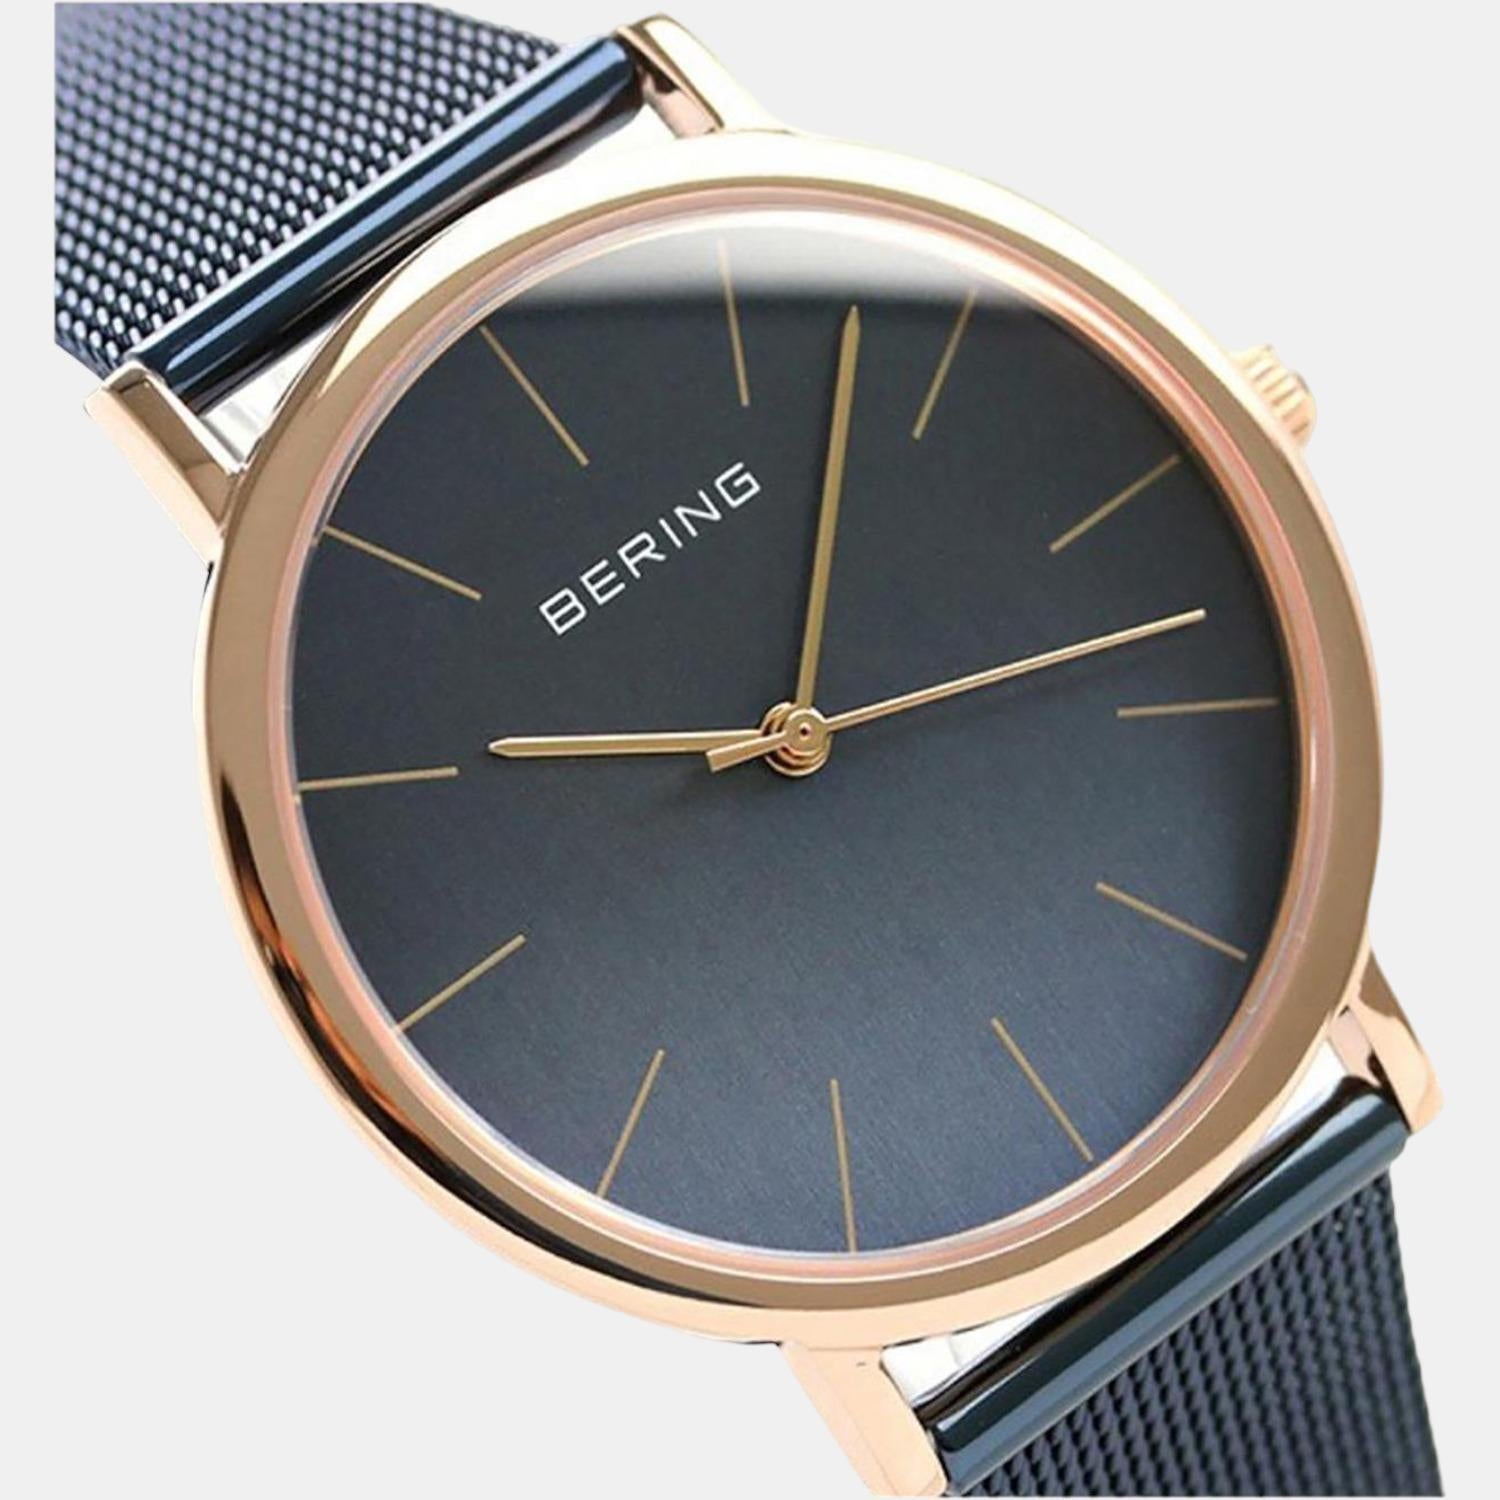 bering-stainless-steel-black-analog-female-watch-13436-367